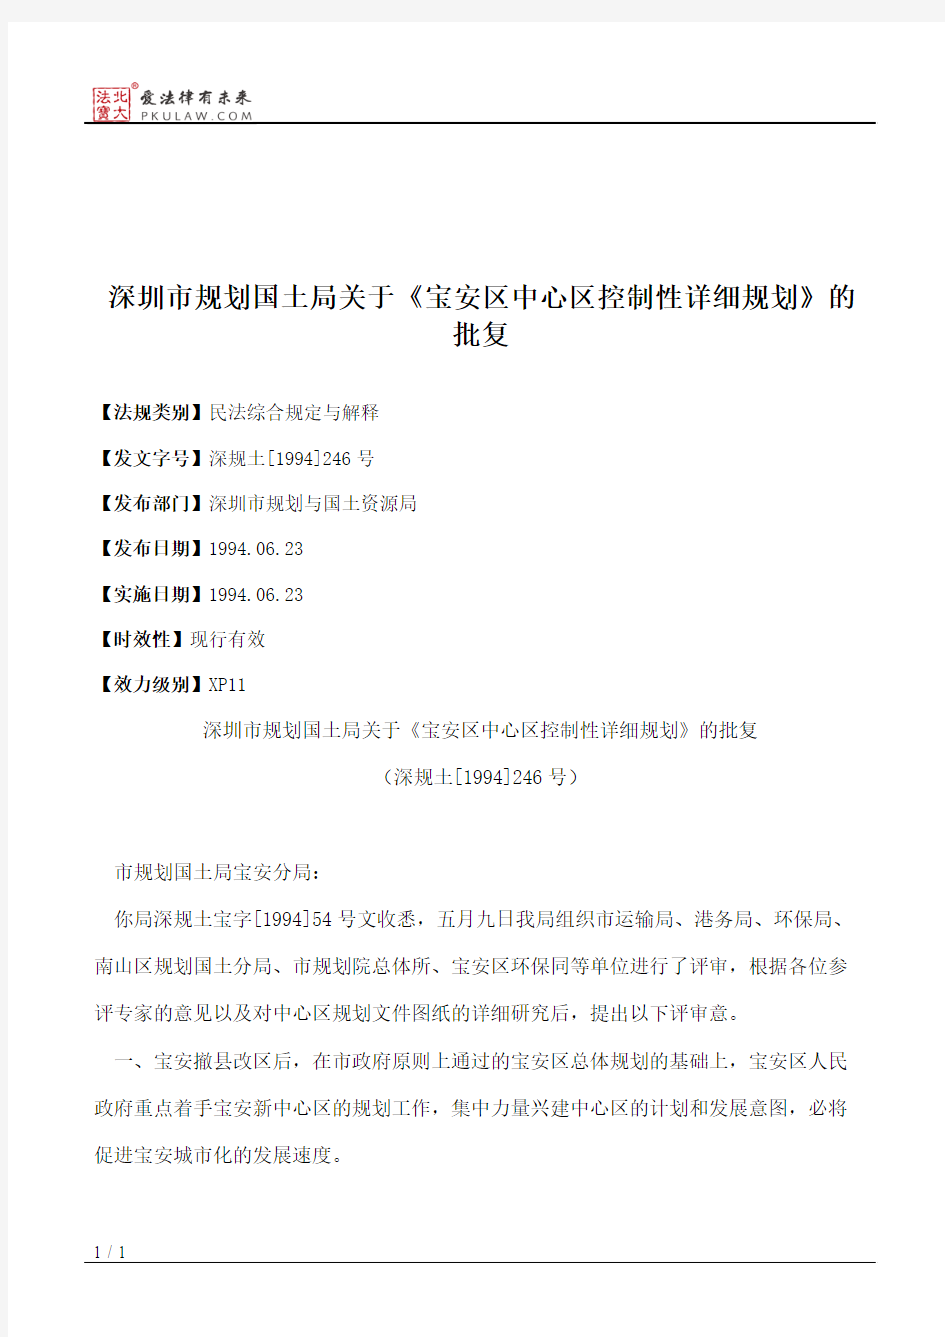 深圳市规划国土局关于《宝安区中心区控制性详细规划》的批复